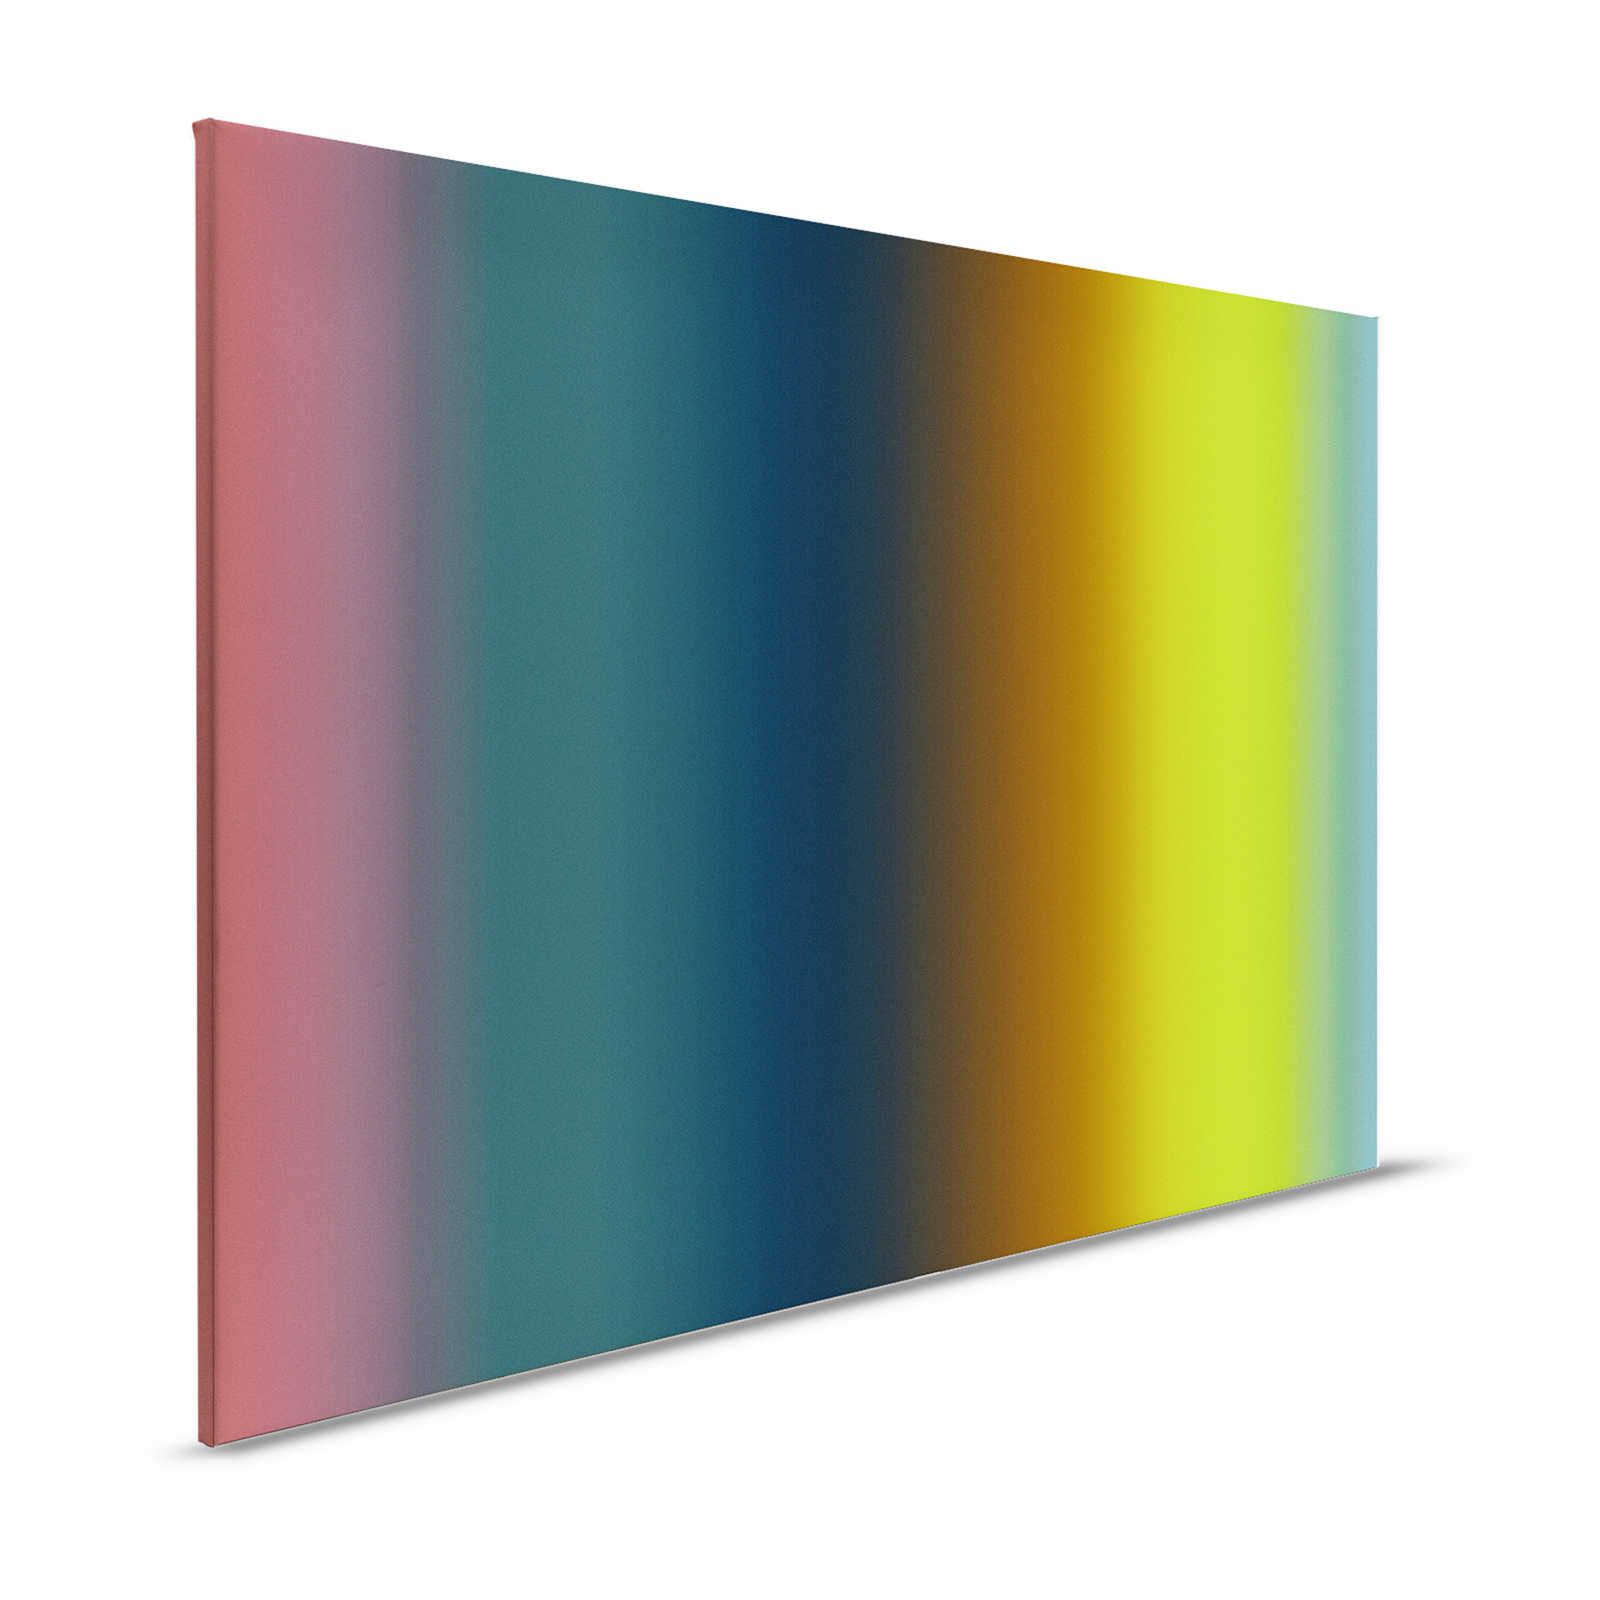 Over the Rainbow 1 - Quadro su tela con spettro di colori dell'arcobaleno moderno - 1,20 m x 0,80 m
